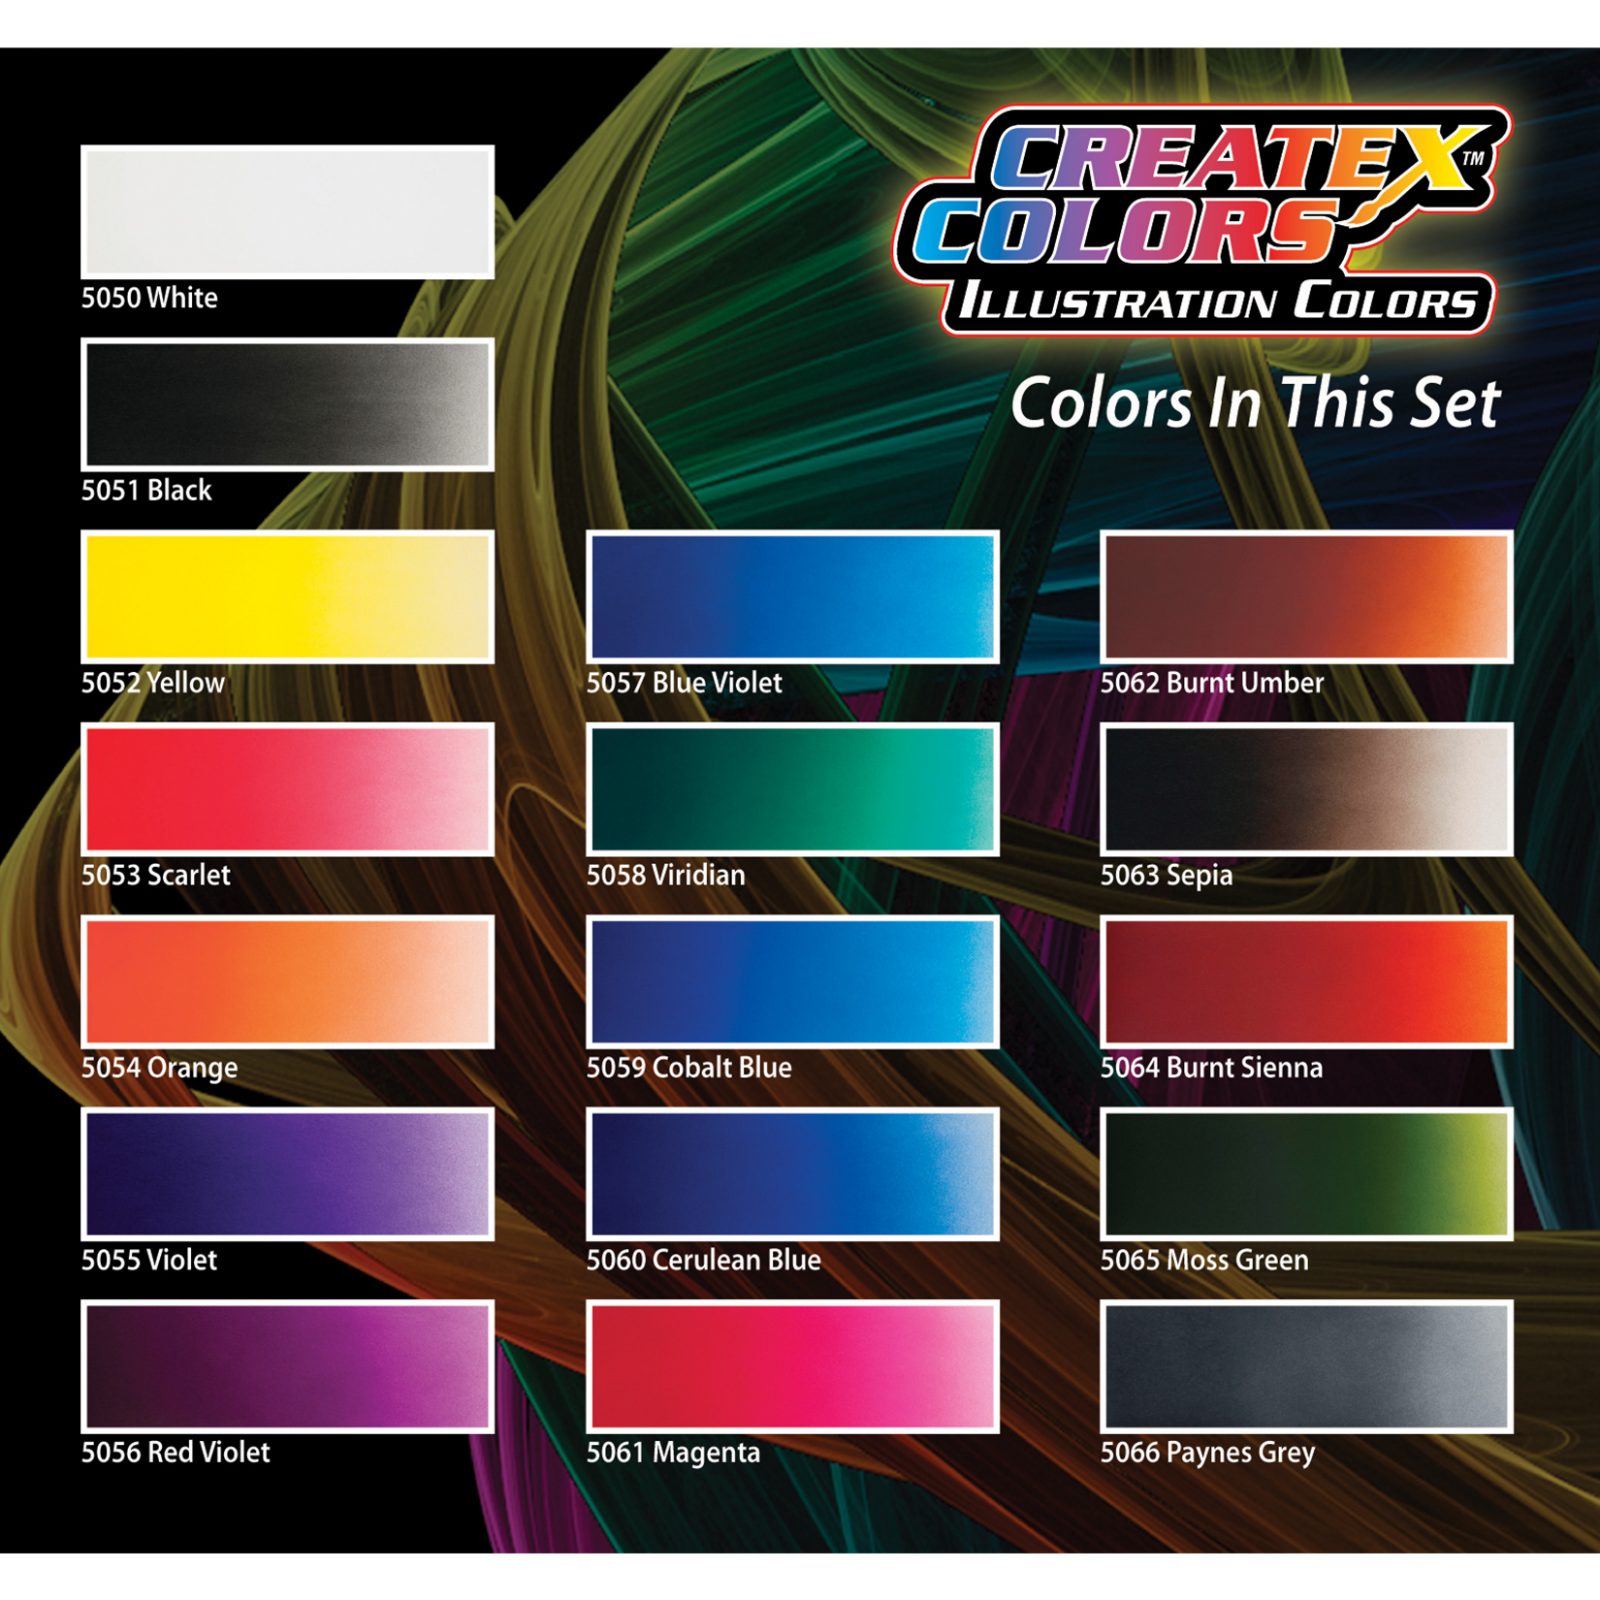 Createx Airbrush Paint 4oz Sunrise Yellow • Price »